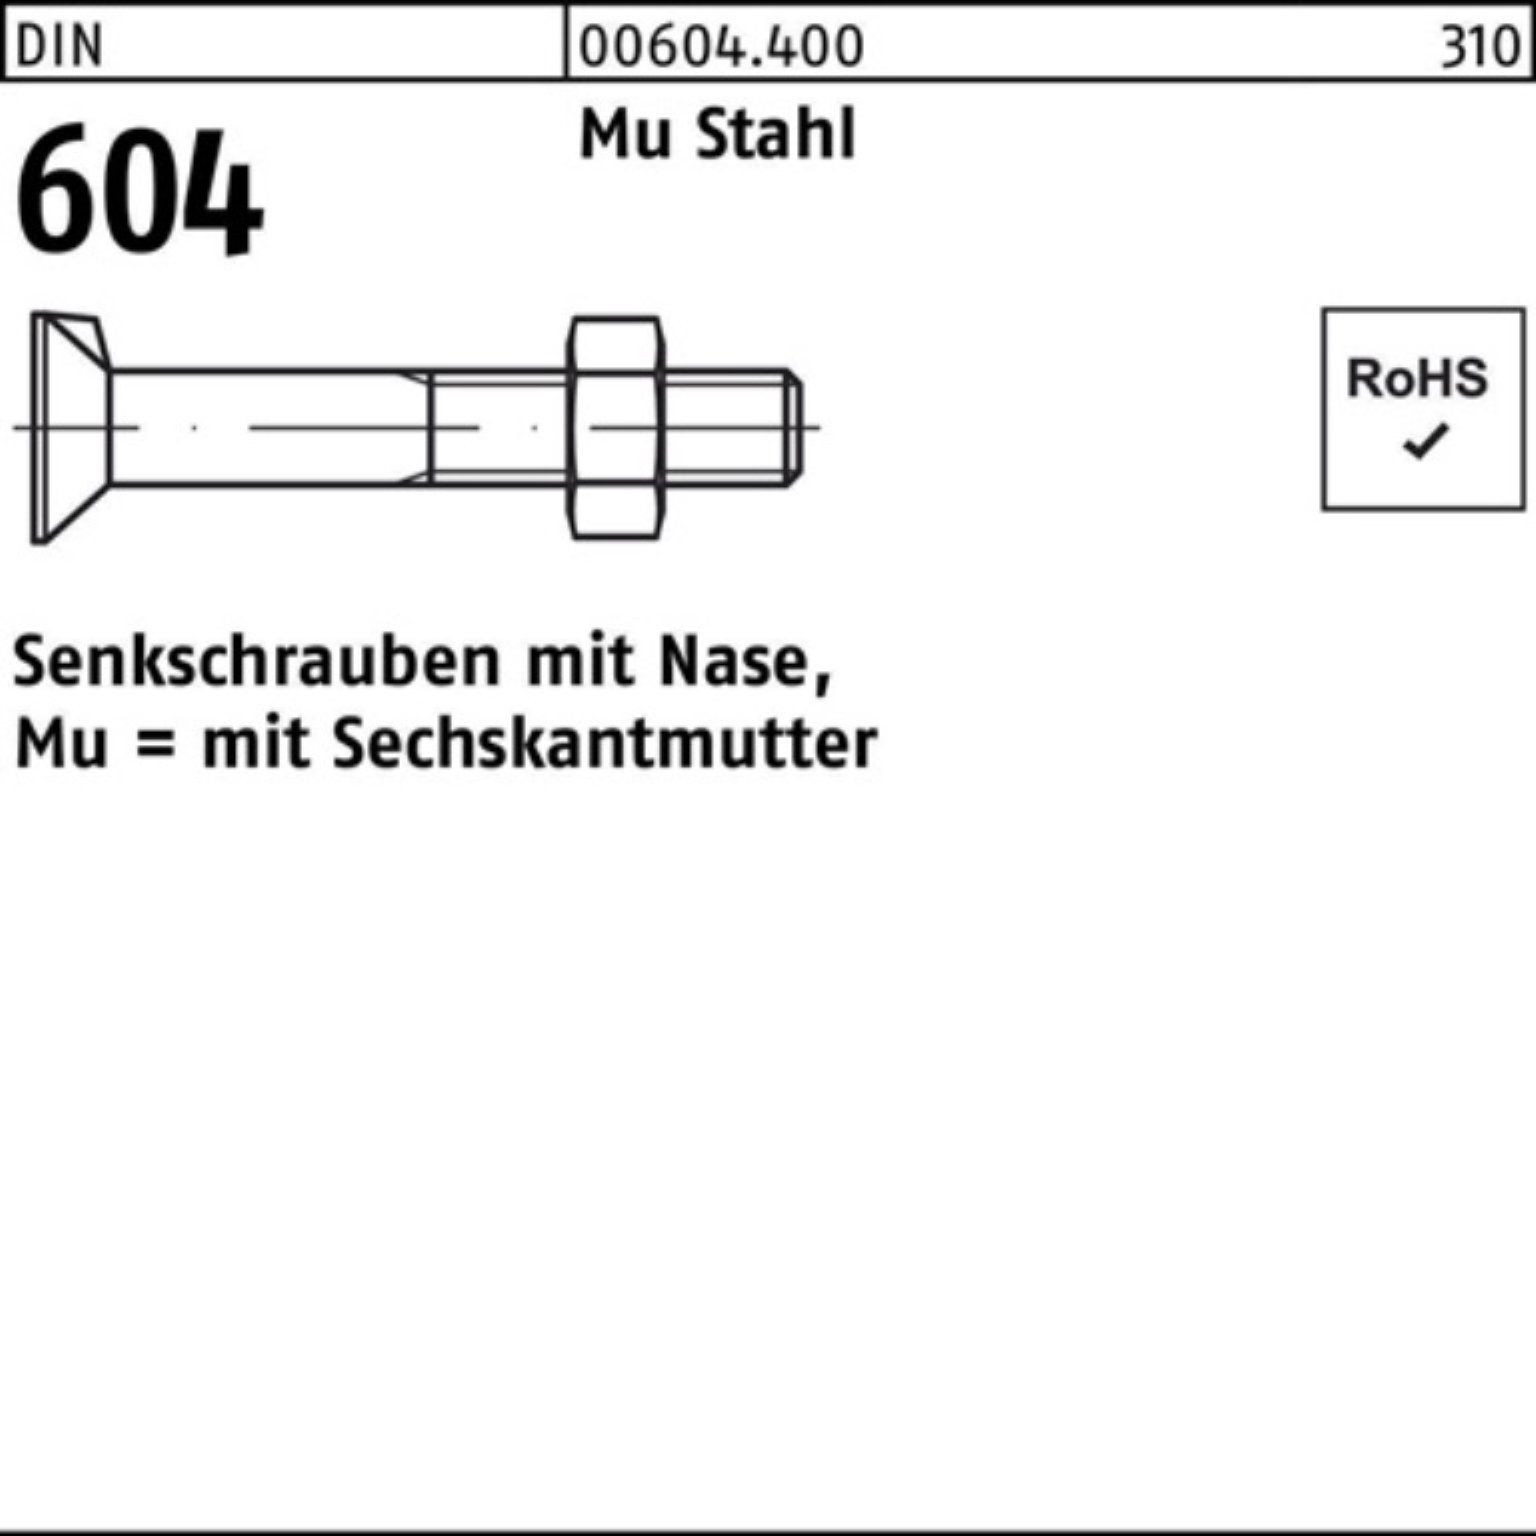 Reyher Senkschraube 2 Senkschraube Nase/6-ktmutter 604 M10x 30 Pack DIN Stahl Mu 200er 4.6